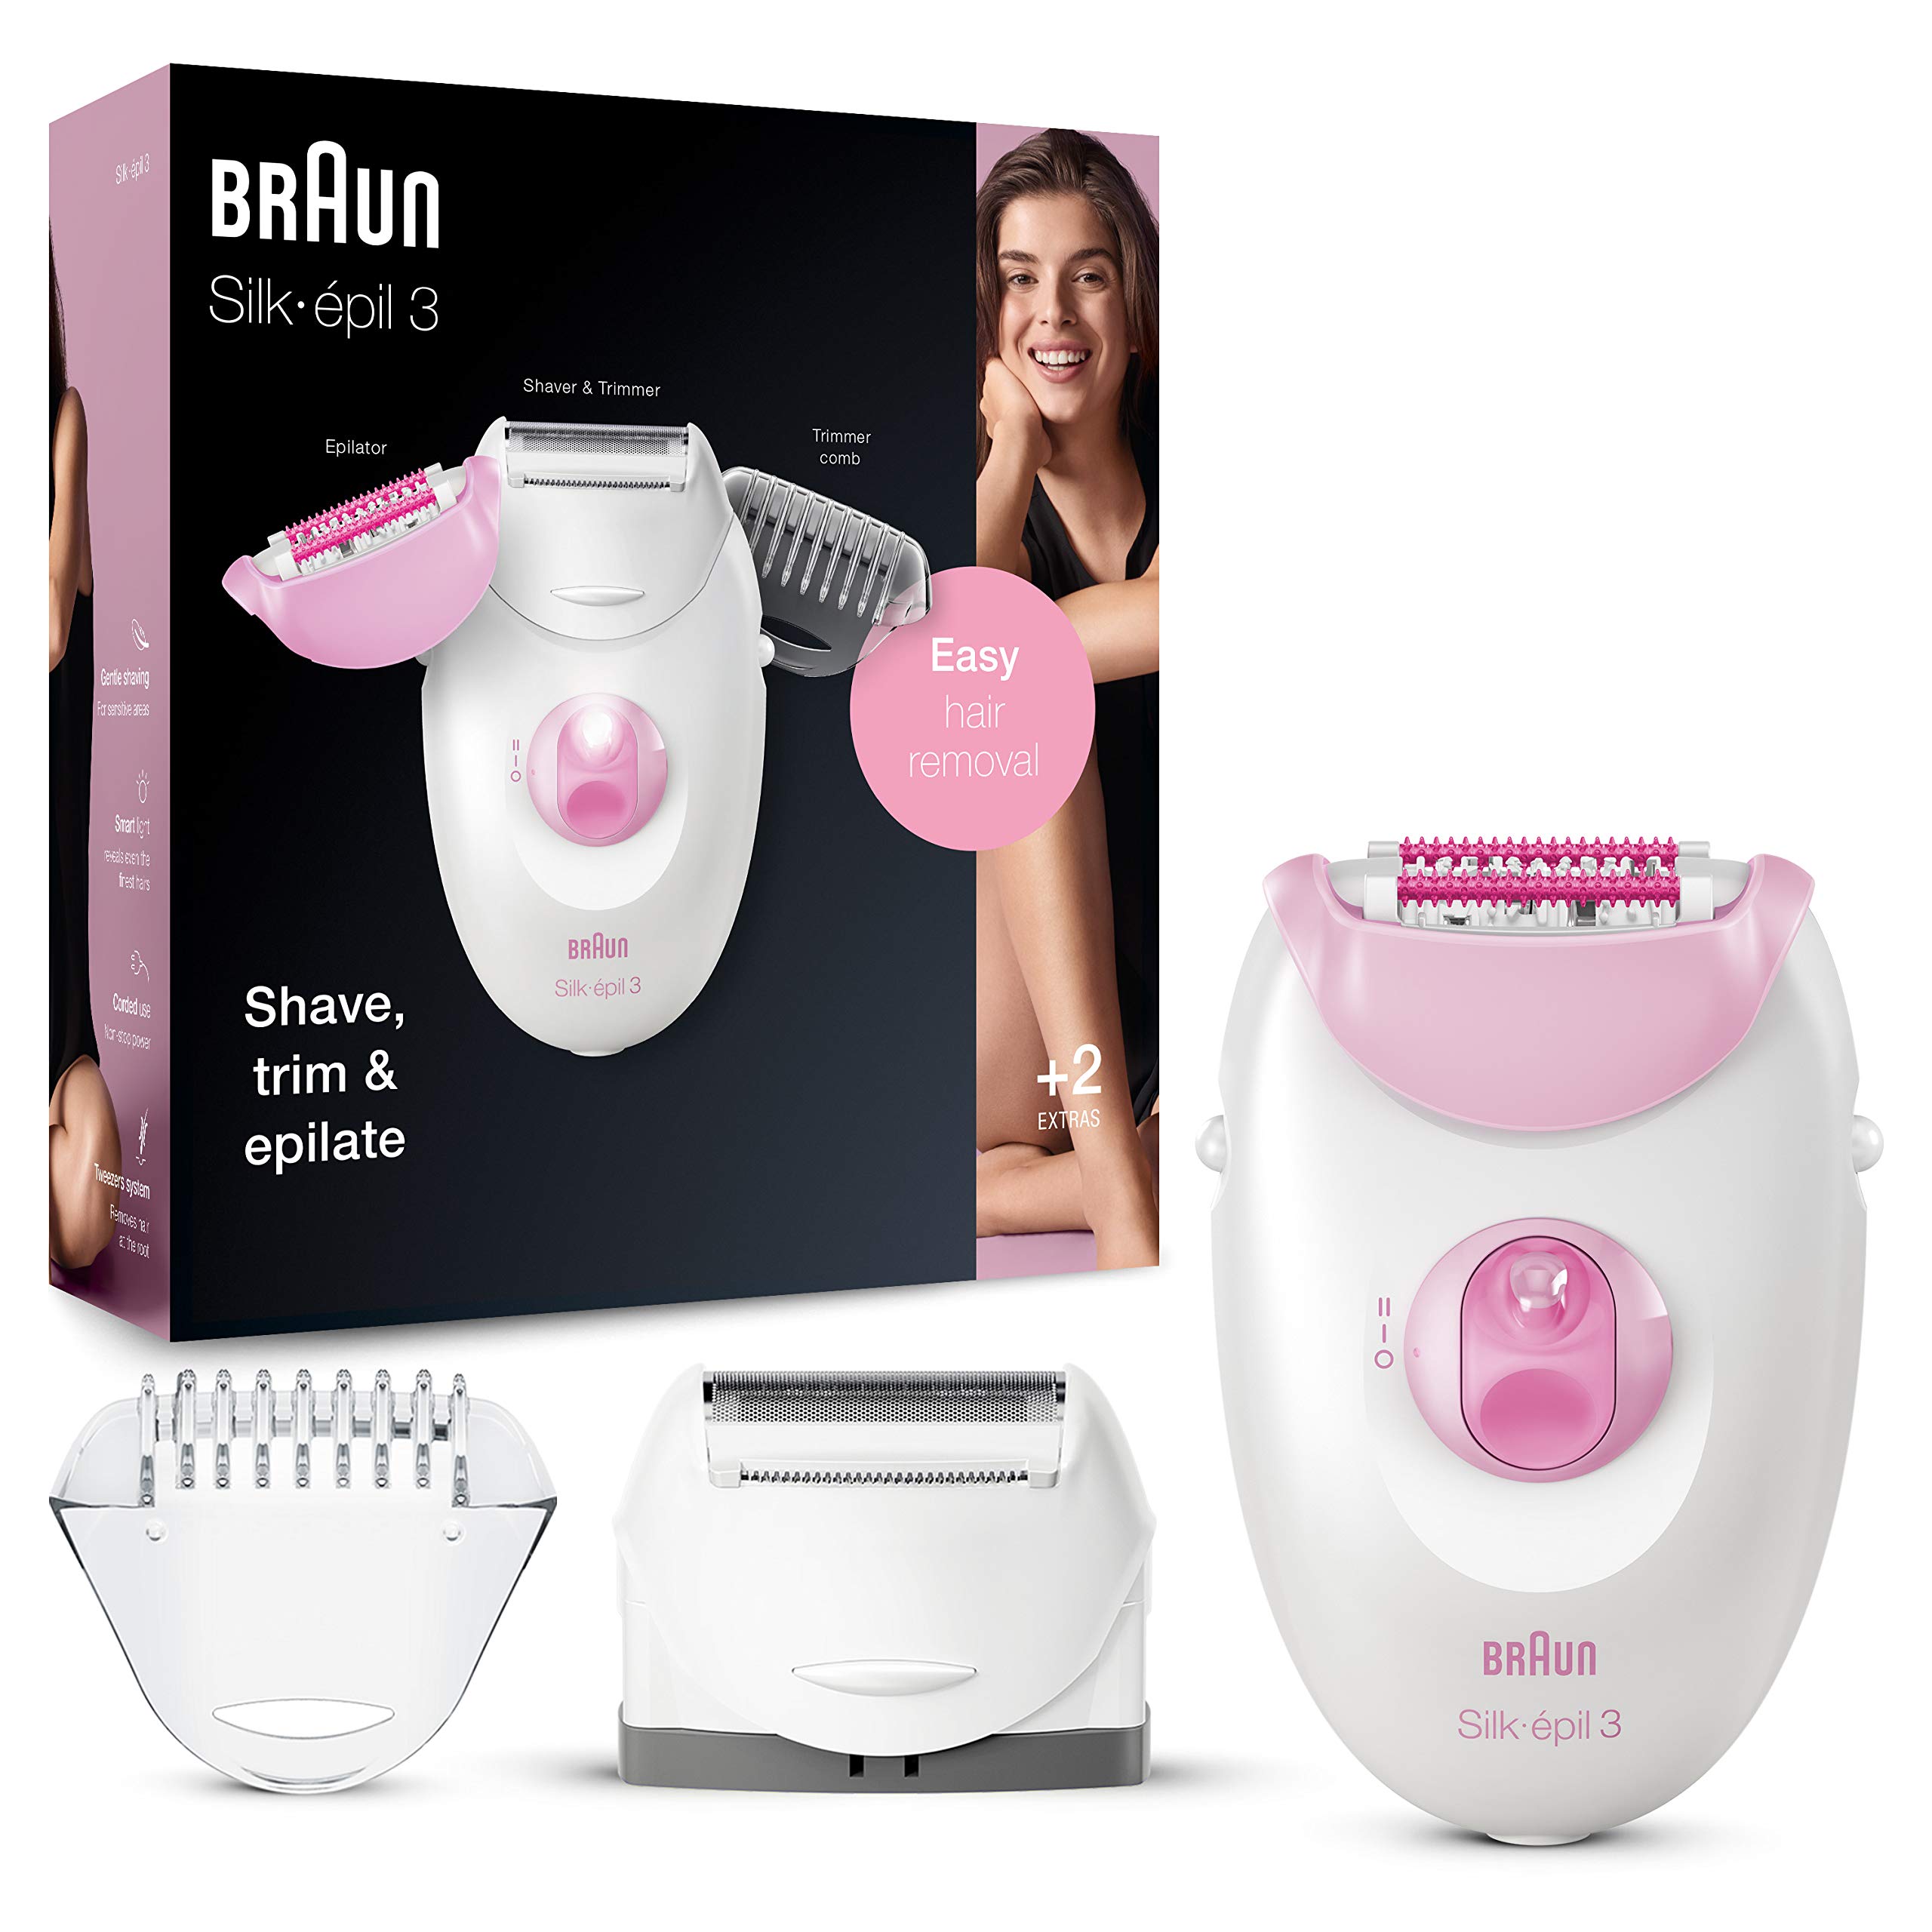 Braun Silk-épil 3 Beauty-Set, Epilierer Damen für Haarentfernung, Aufsätze für Rasierer, Trimmer und Massage für Körper, 3270, pink/weiß